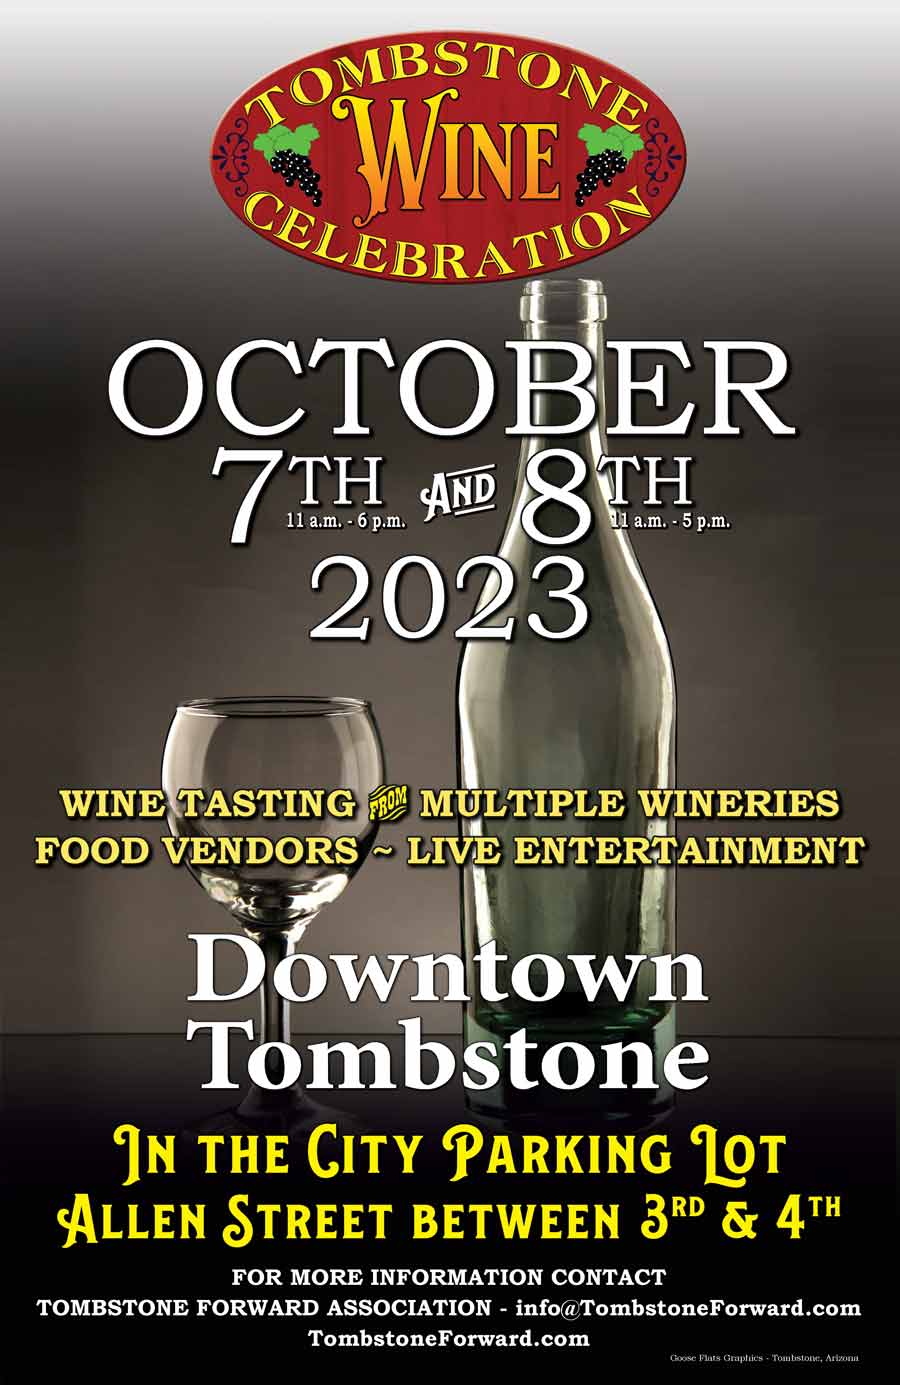 Tombstone Wine Celebration ⋆ Discover Tombstone Arizona